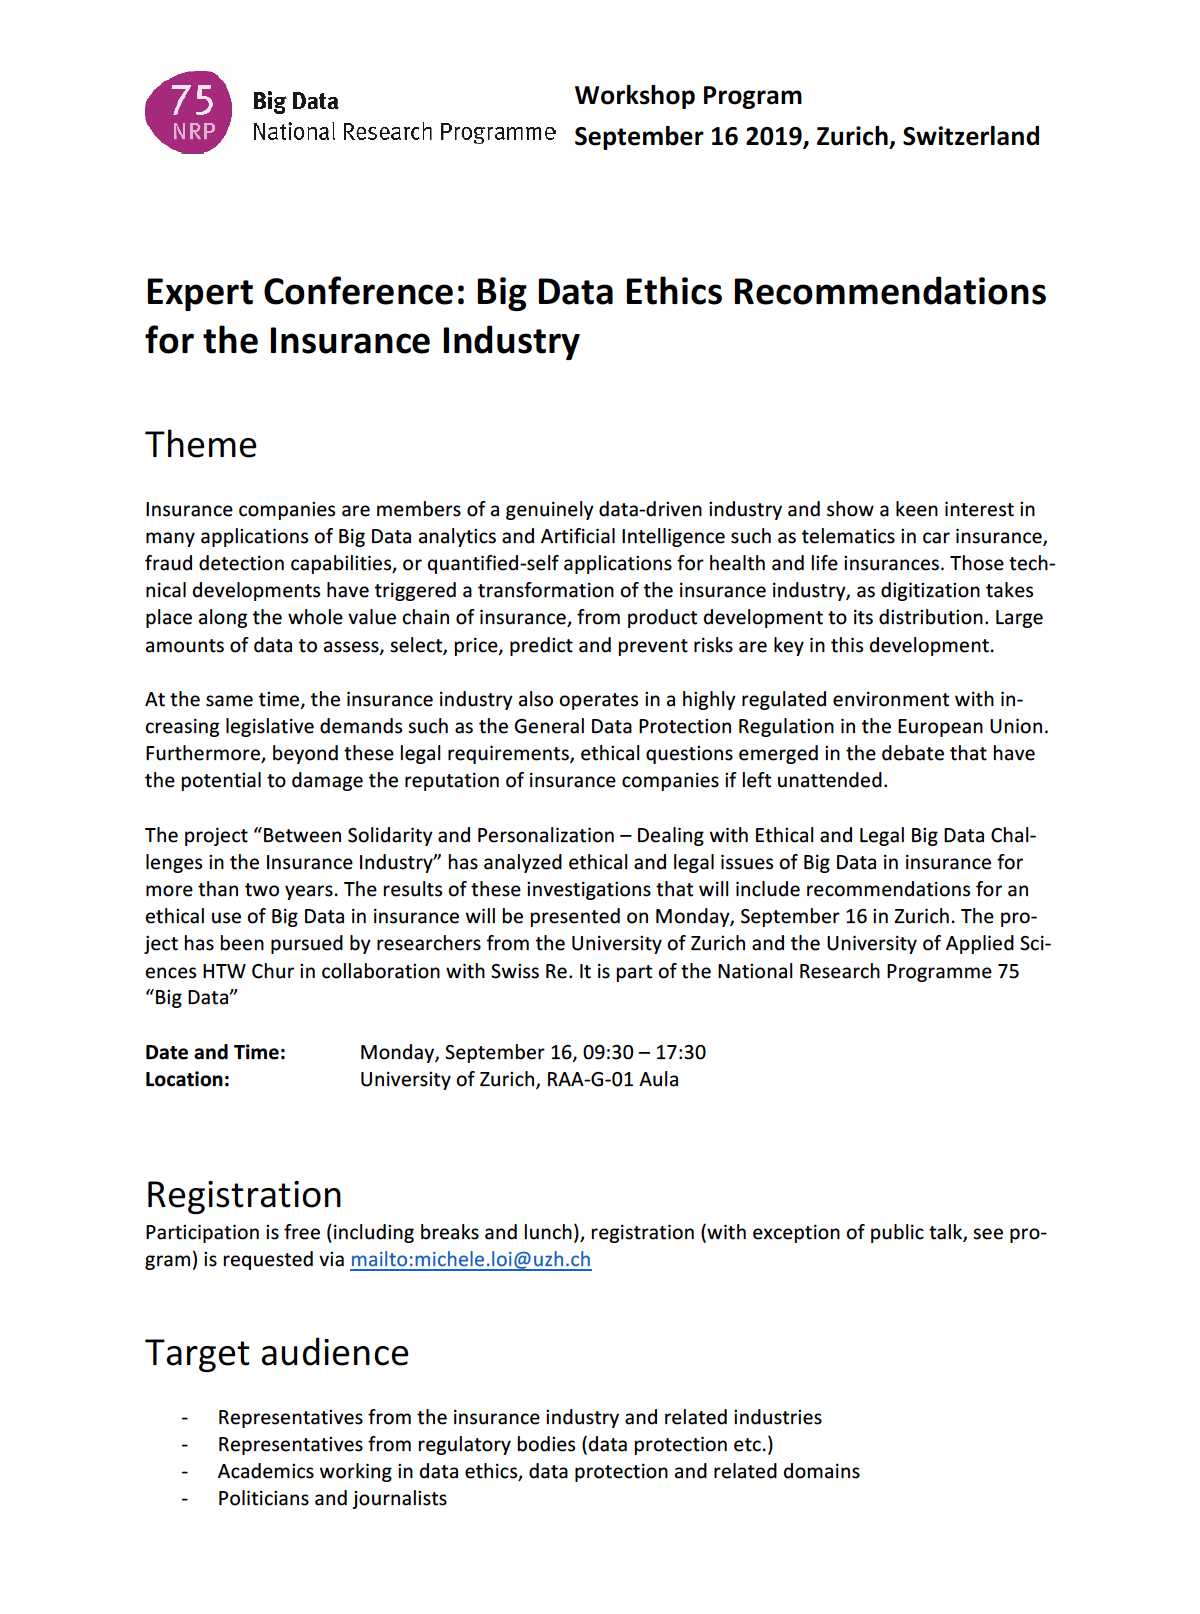 Big Data Ethics S1